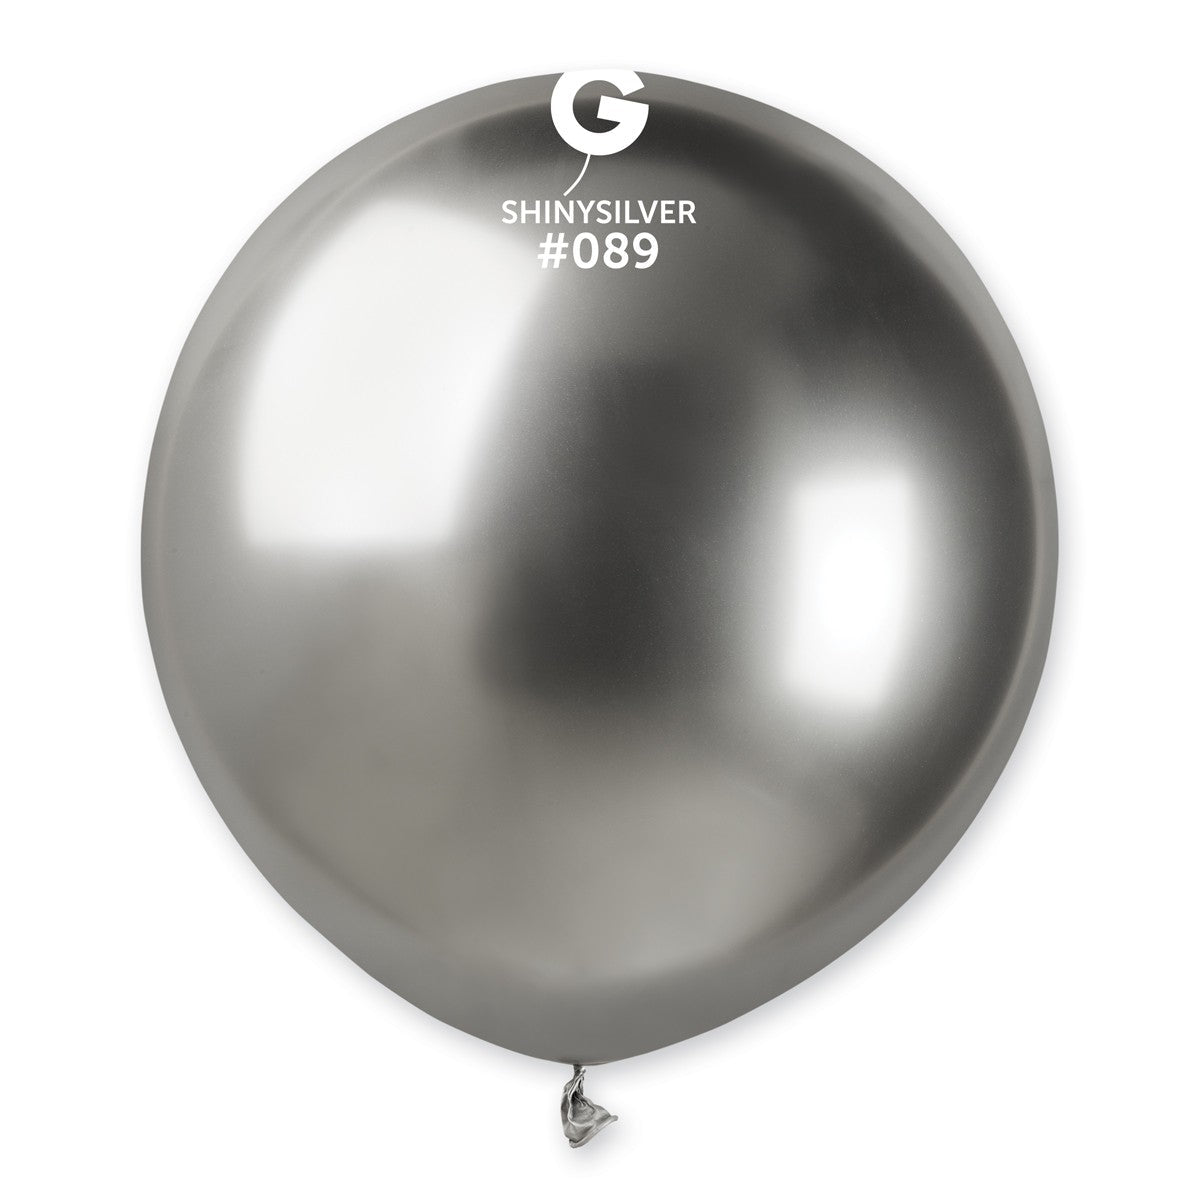 Gemar Balloon Sizer / Calibrator